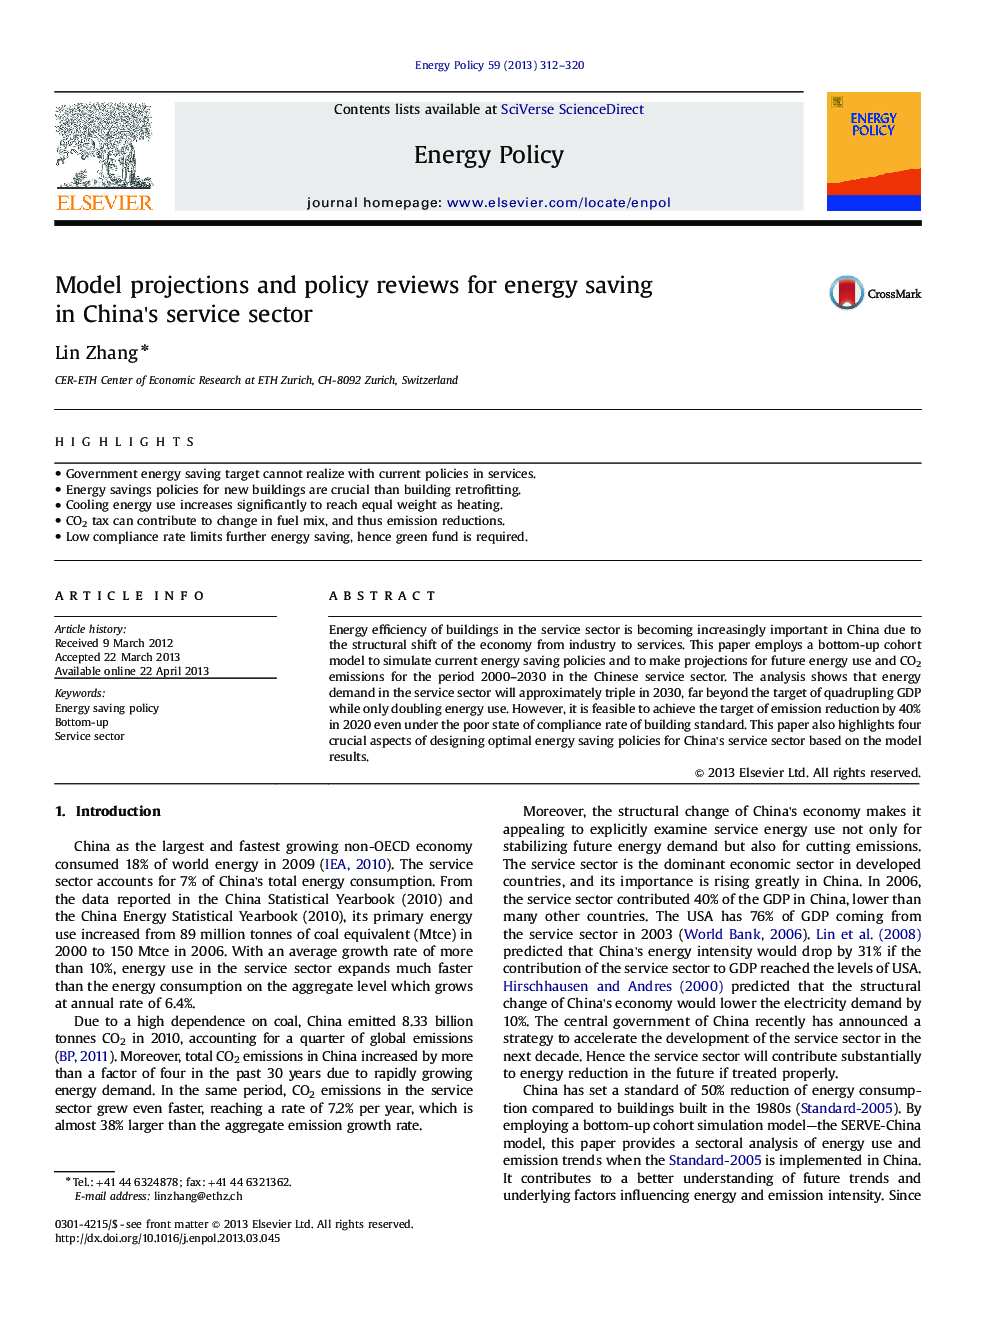 پیش بینی مدل و بررسی سیاست های صرفه جویی در انرژی در بخش خدمات چین 